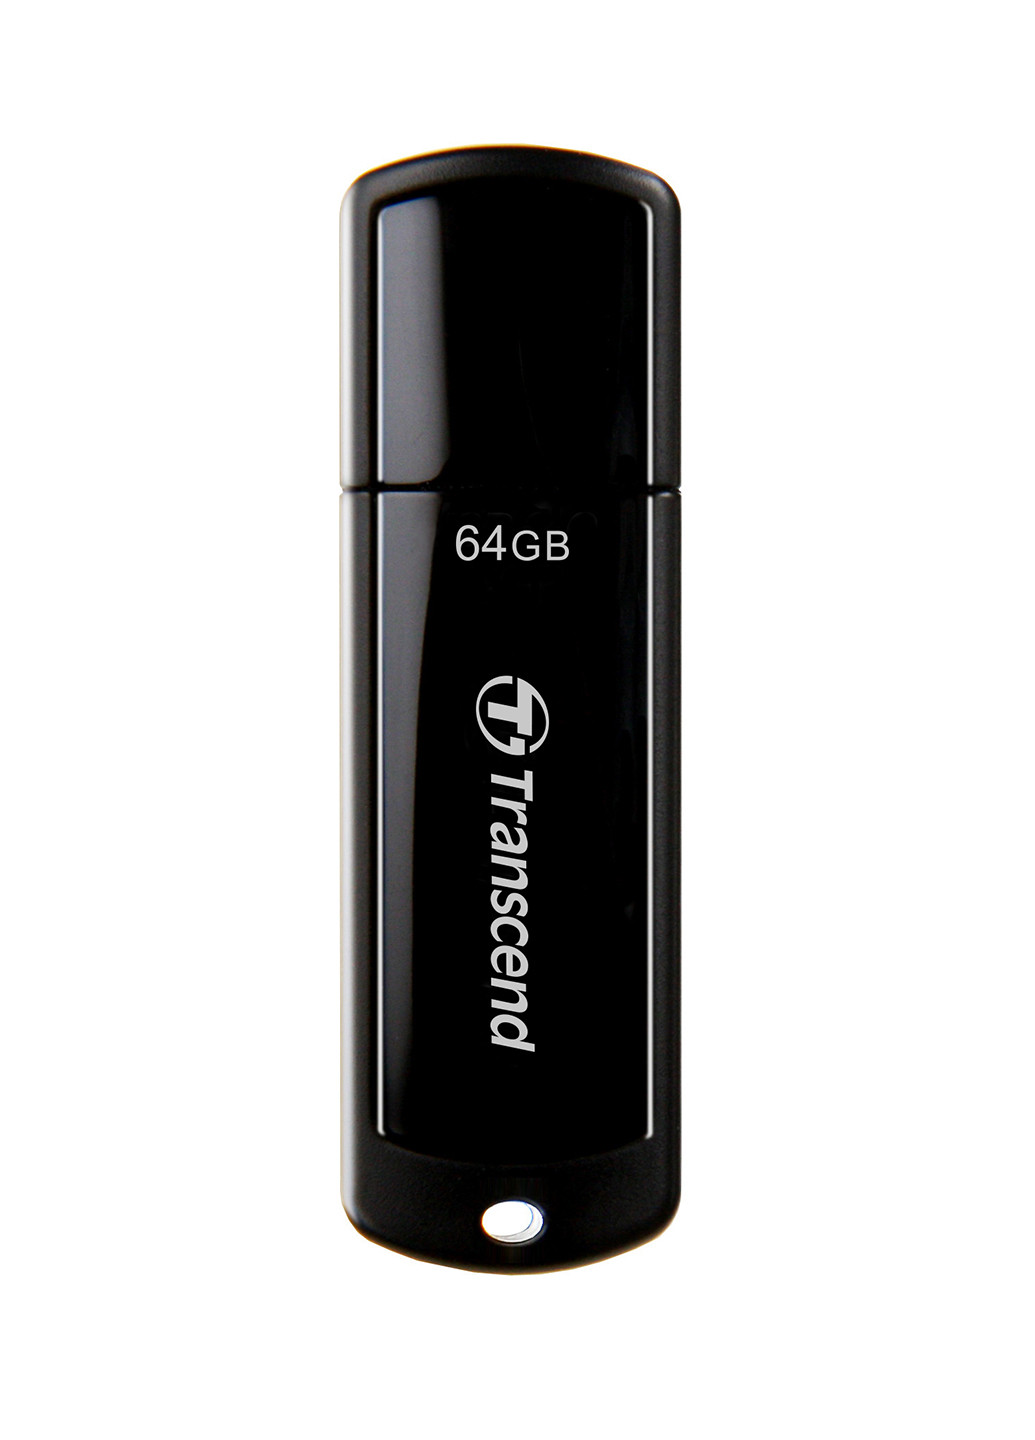 Флеш пам'ять USB JetFlash 700 64GB USB 3.0 Black (TS64GJF700) Transcend флеш память usb transcend jetflash 700 64gb usb 3.0 black (ts64gjf700) (135165476)